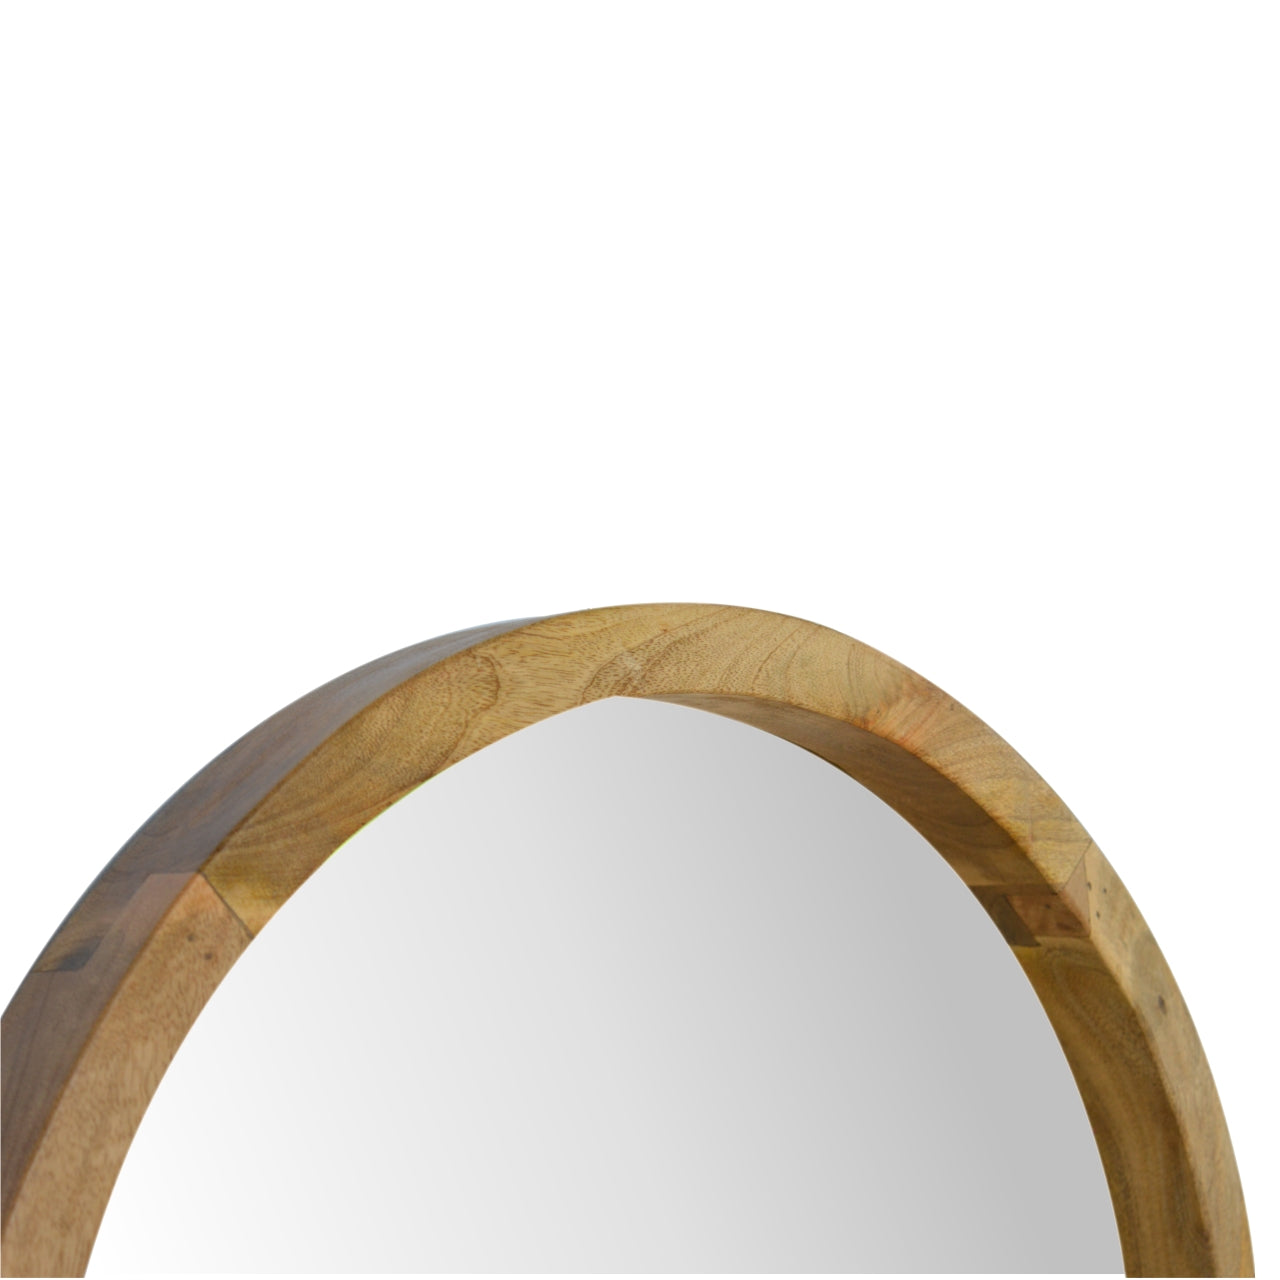 Wooden Round Mirror with 1 Shelf